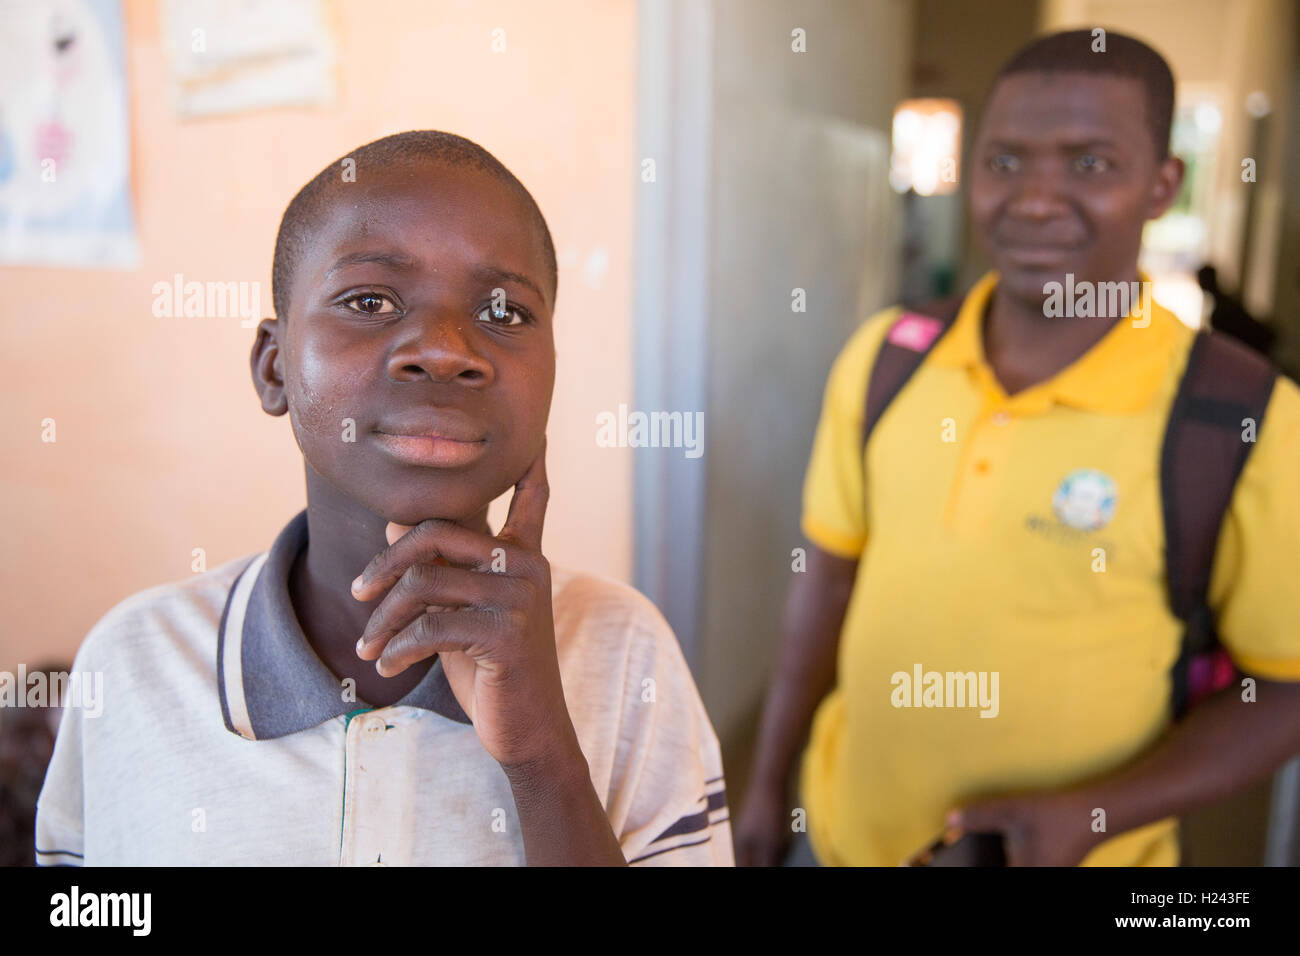 Hôpital Ribaue, Ribaue, province de Nampula, Mozambique, Août 2015 : Saide Antonio, 16 ans, après sa première opération de la cataracte le jour avant. Photo de Mike Goldwater Banque D'Images